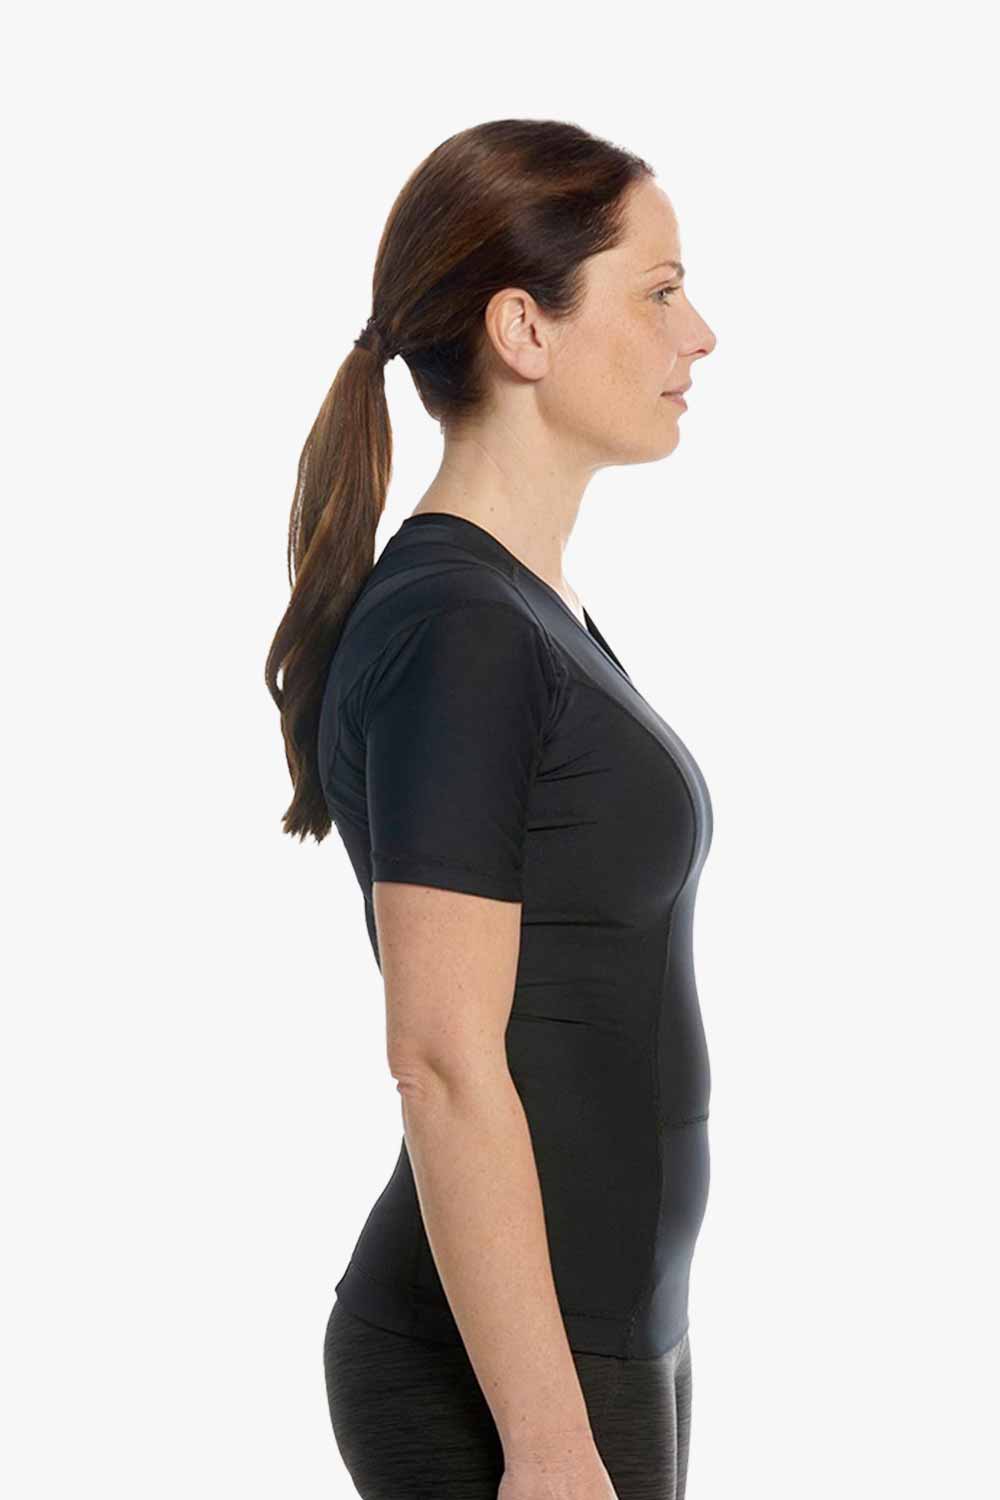 Schwarzes posture shirt von Anodyne mit Reißverschluss